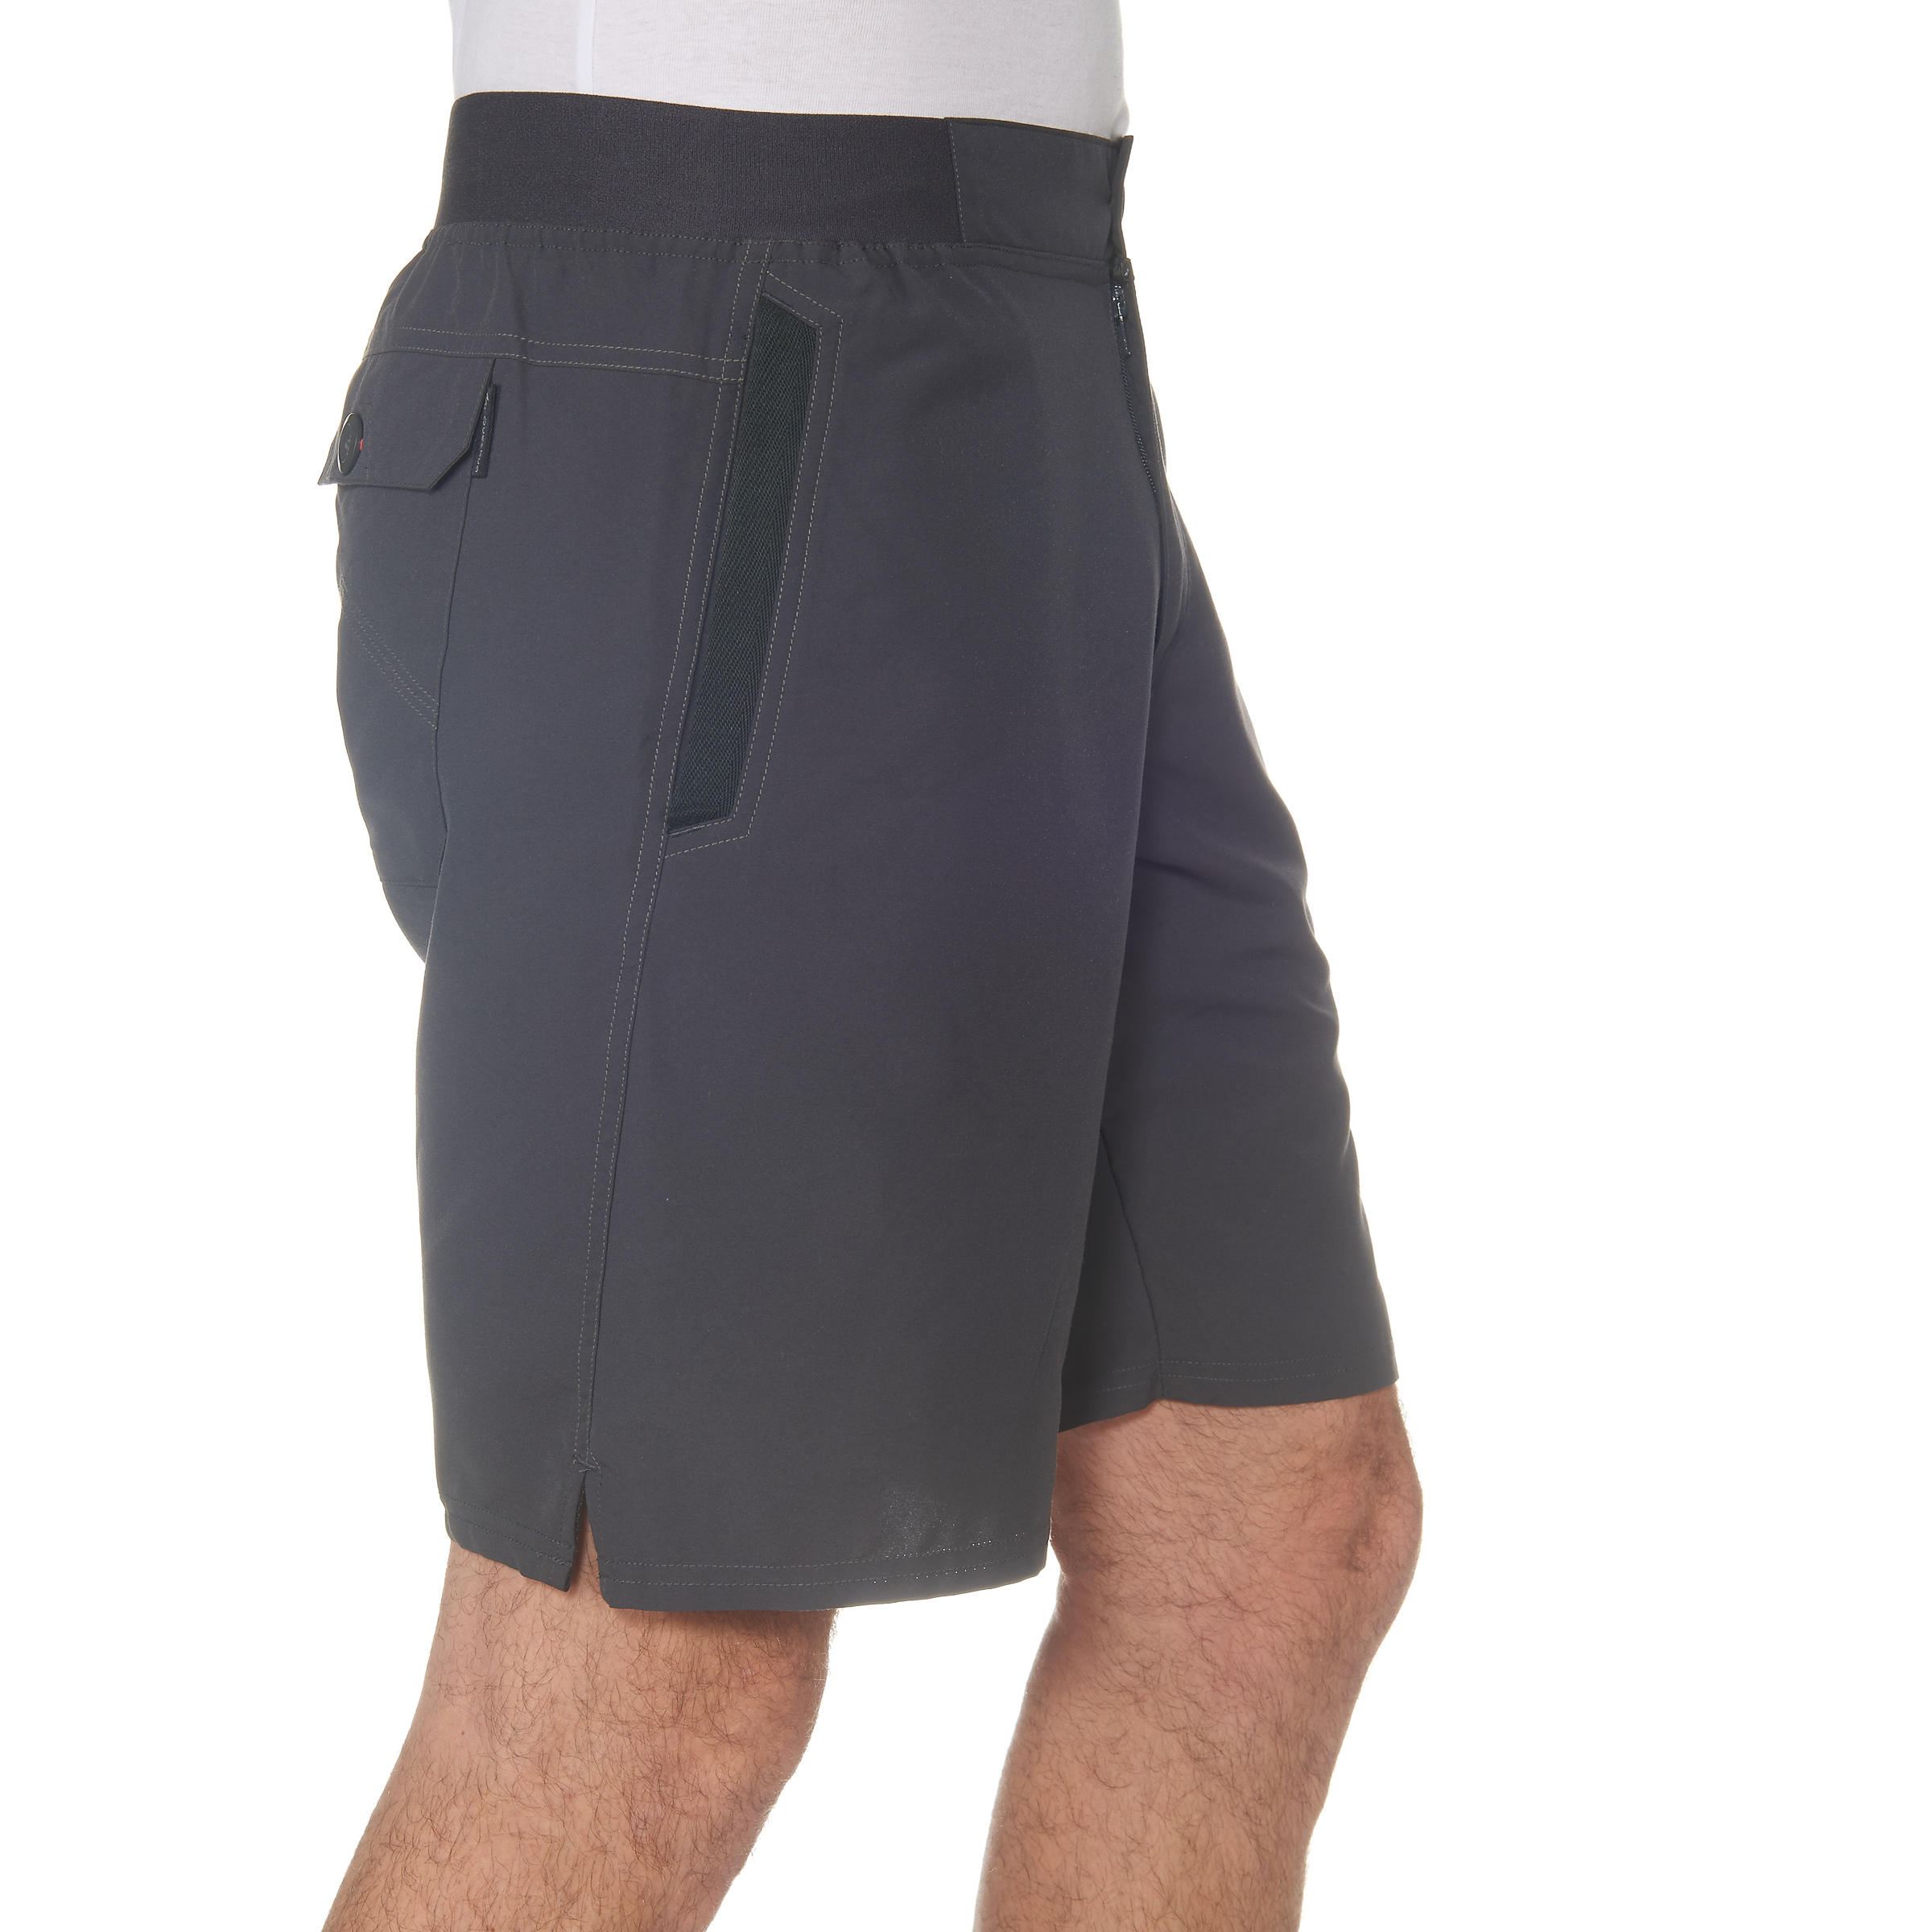 decathlon walking shorts